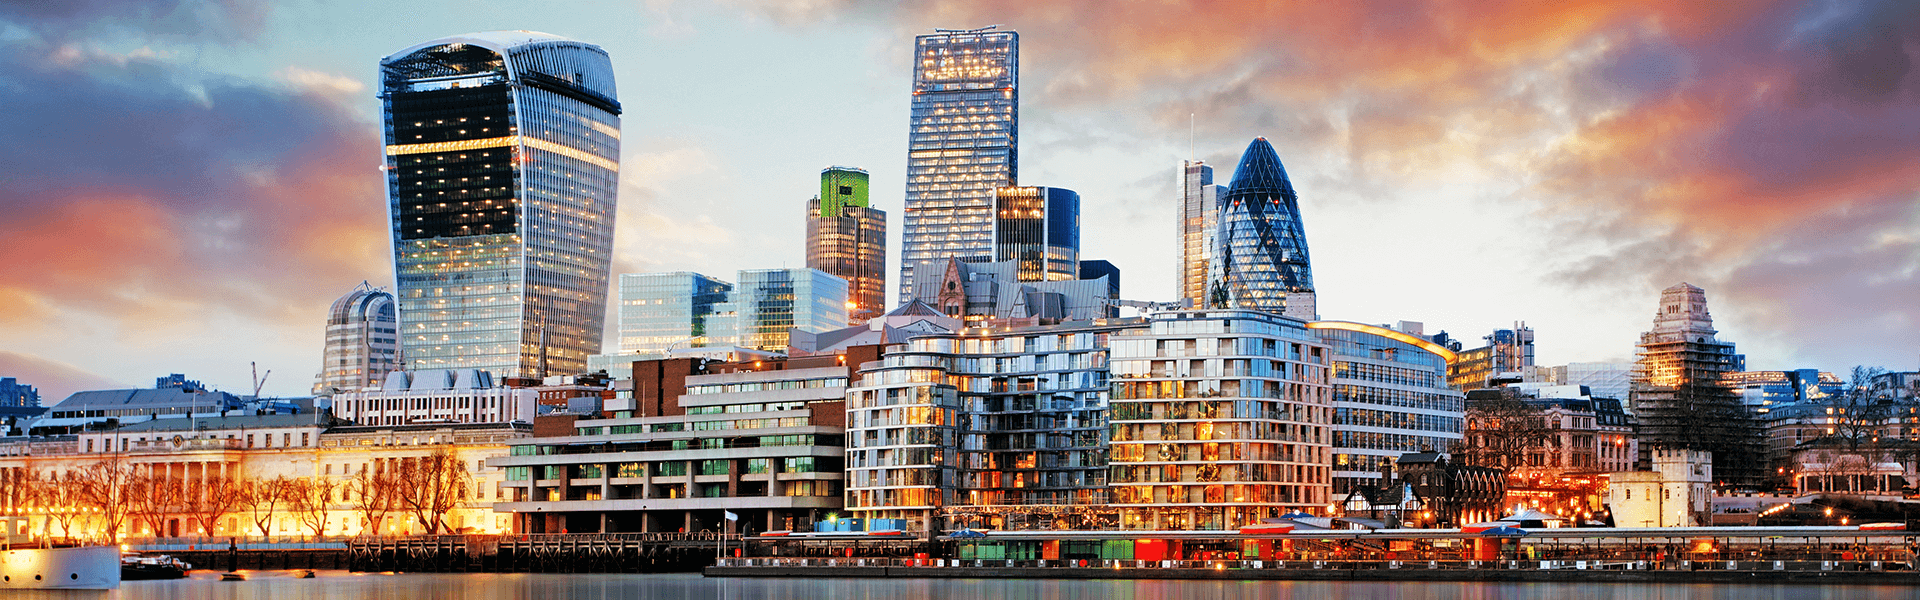 Лондон побеждает в горячих точках в сфере элитной недвижимости: опрос - Новости роскоши в Африке